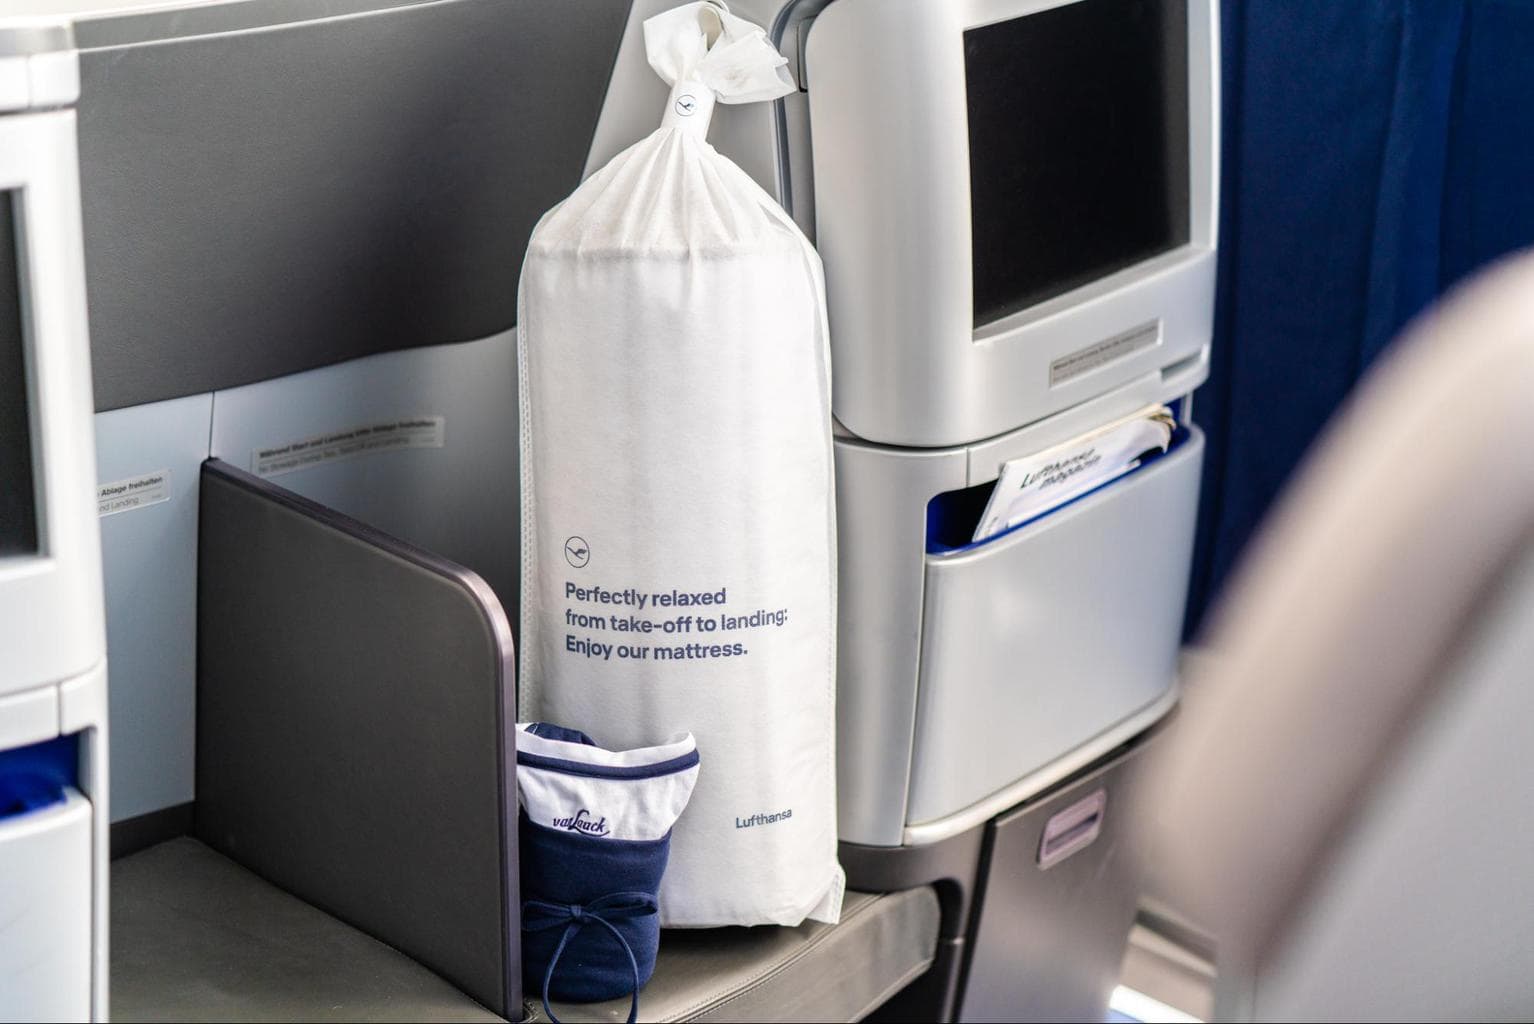 The packaging of Lufthansa’s Business Class duvet